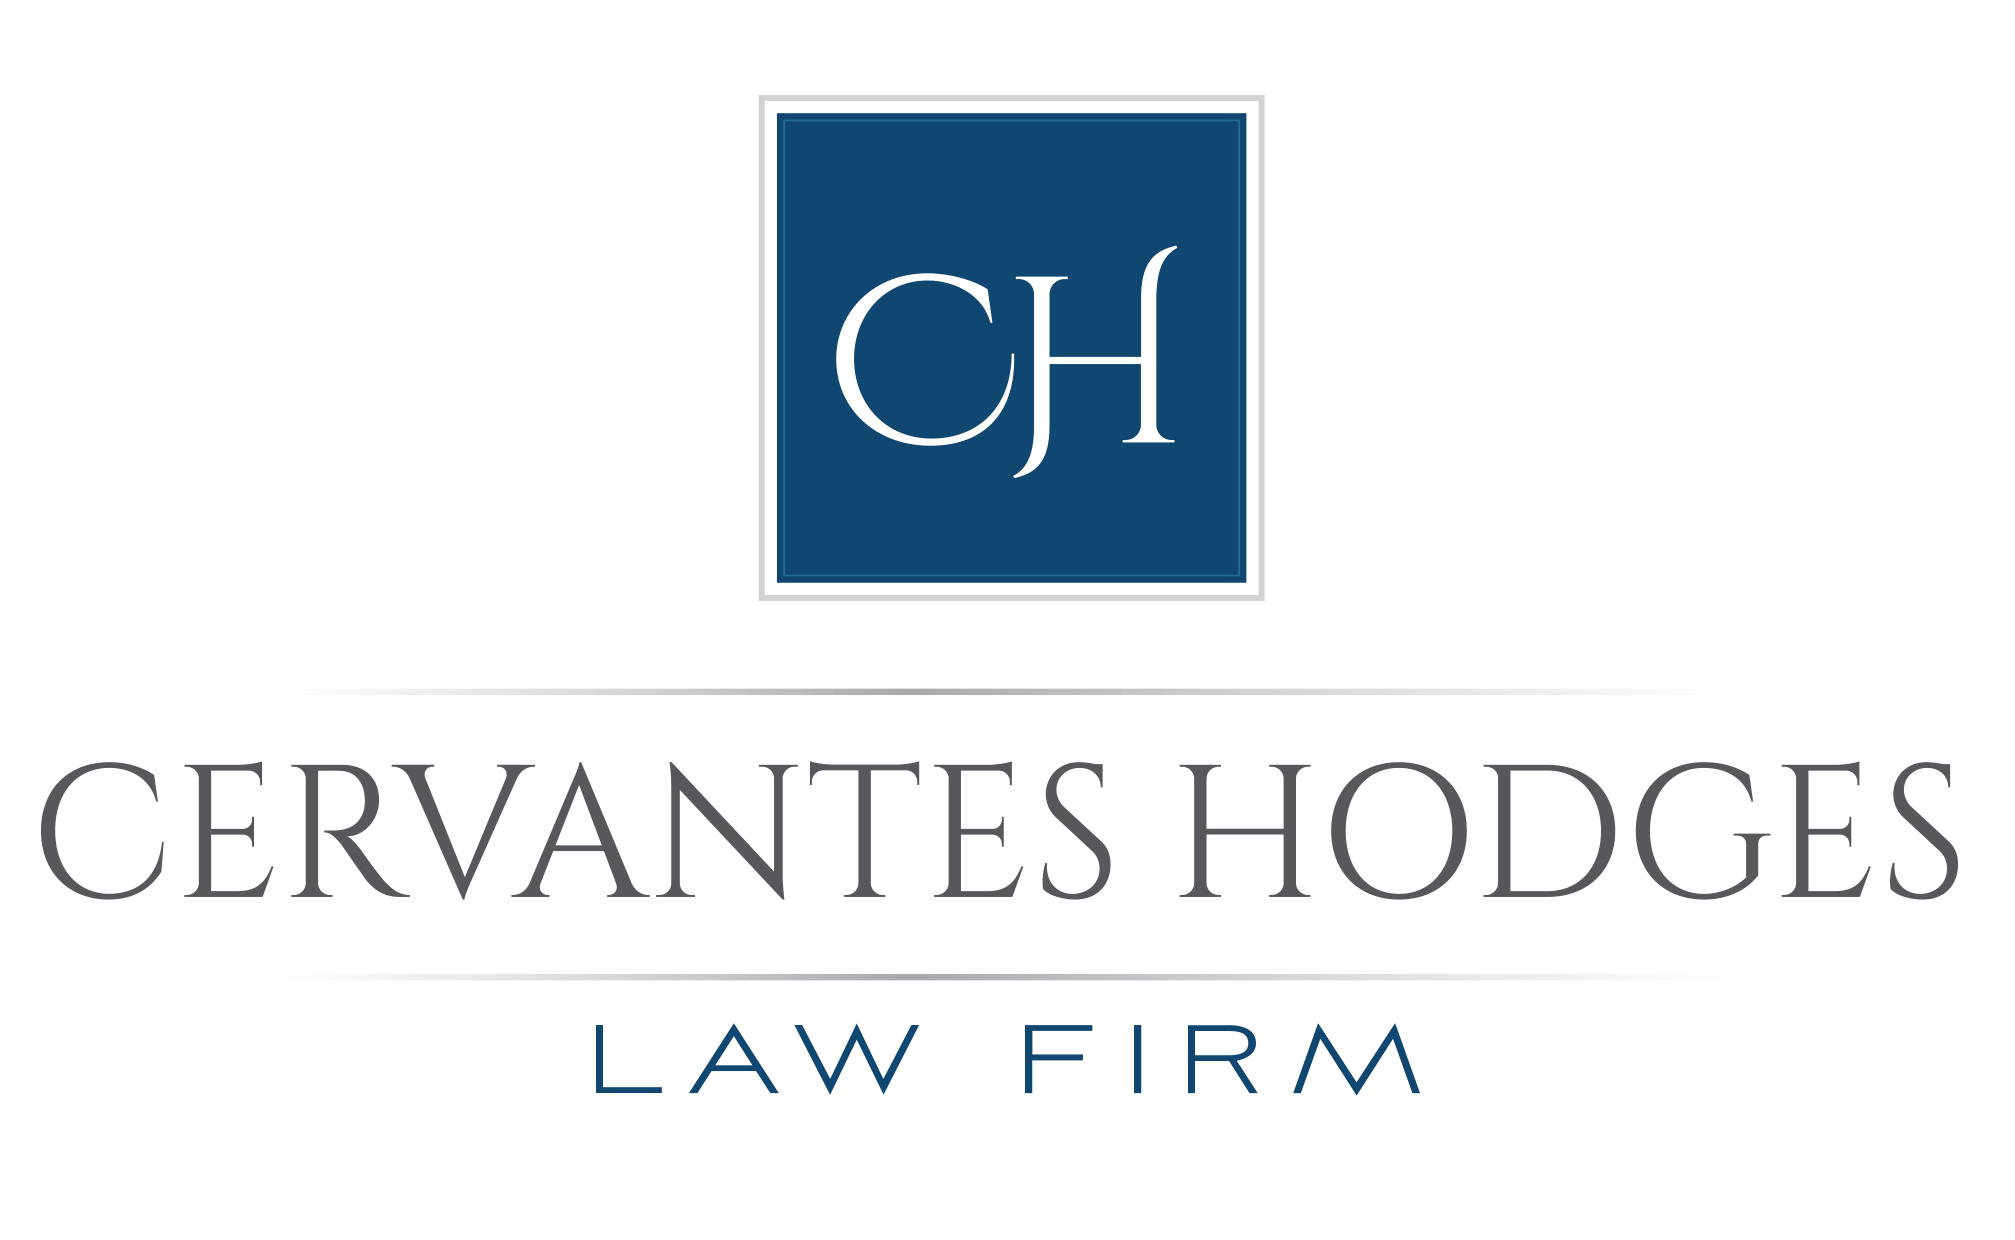 Cervantes Hodges Law Firm
